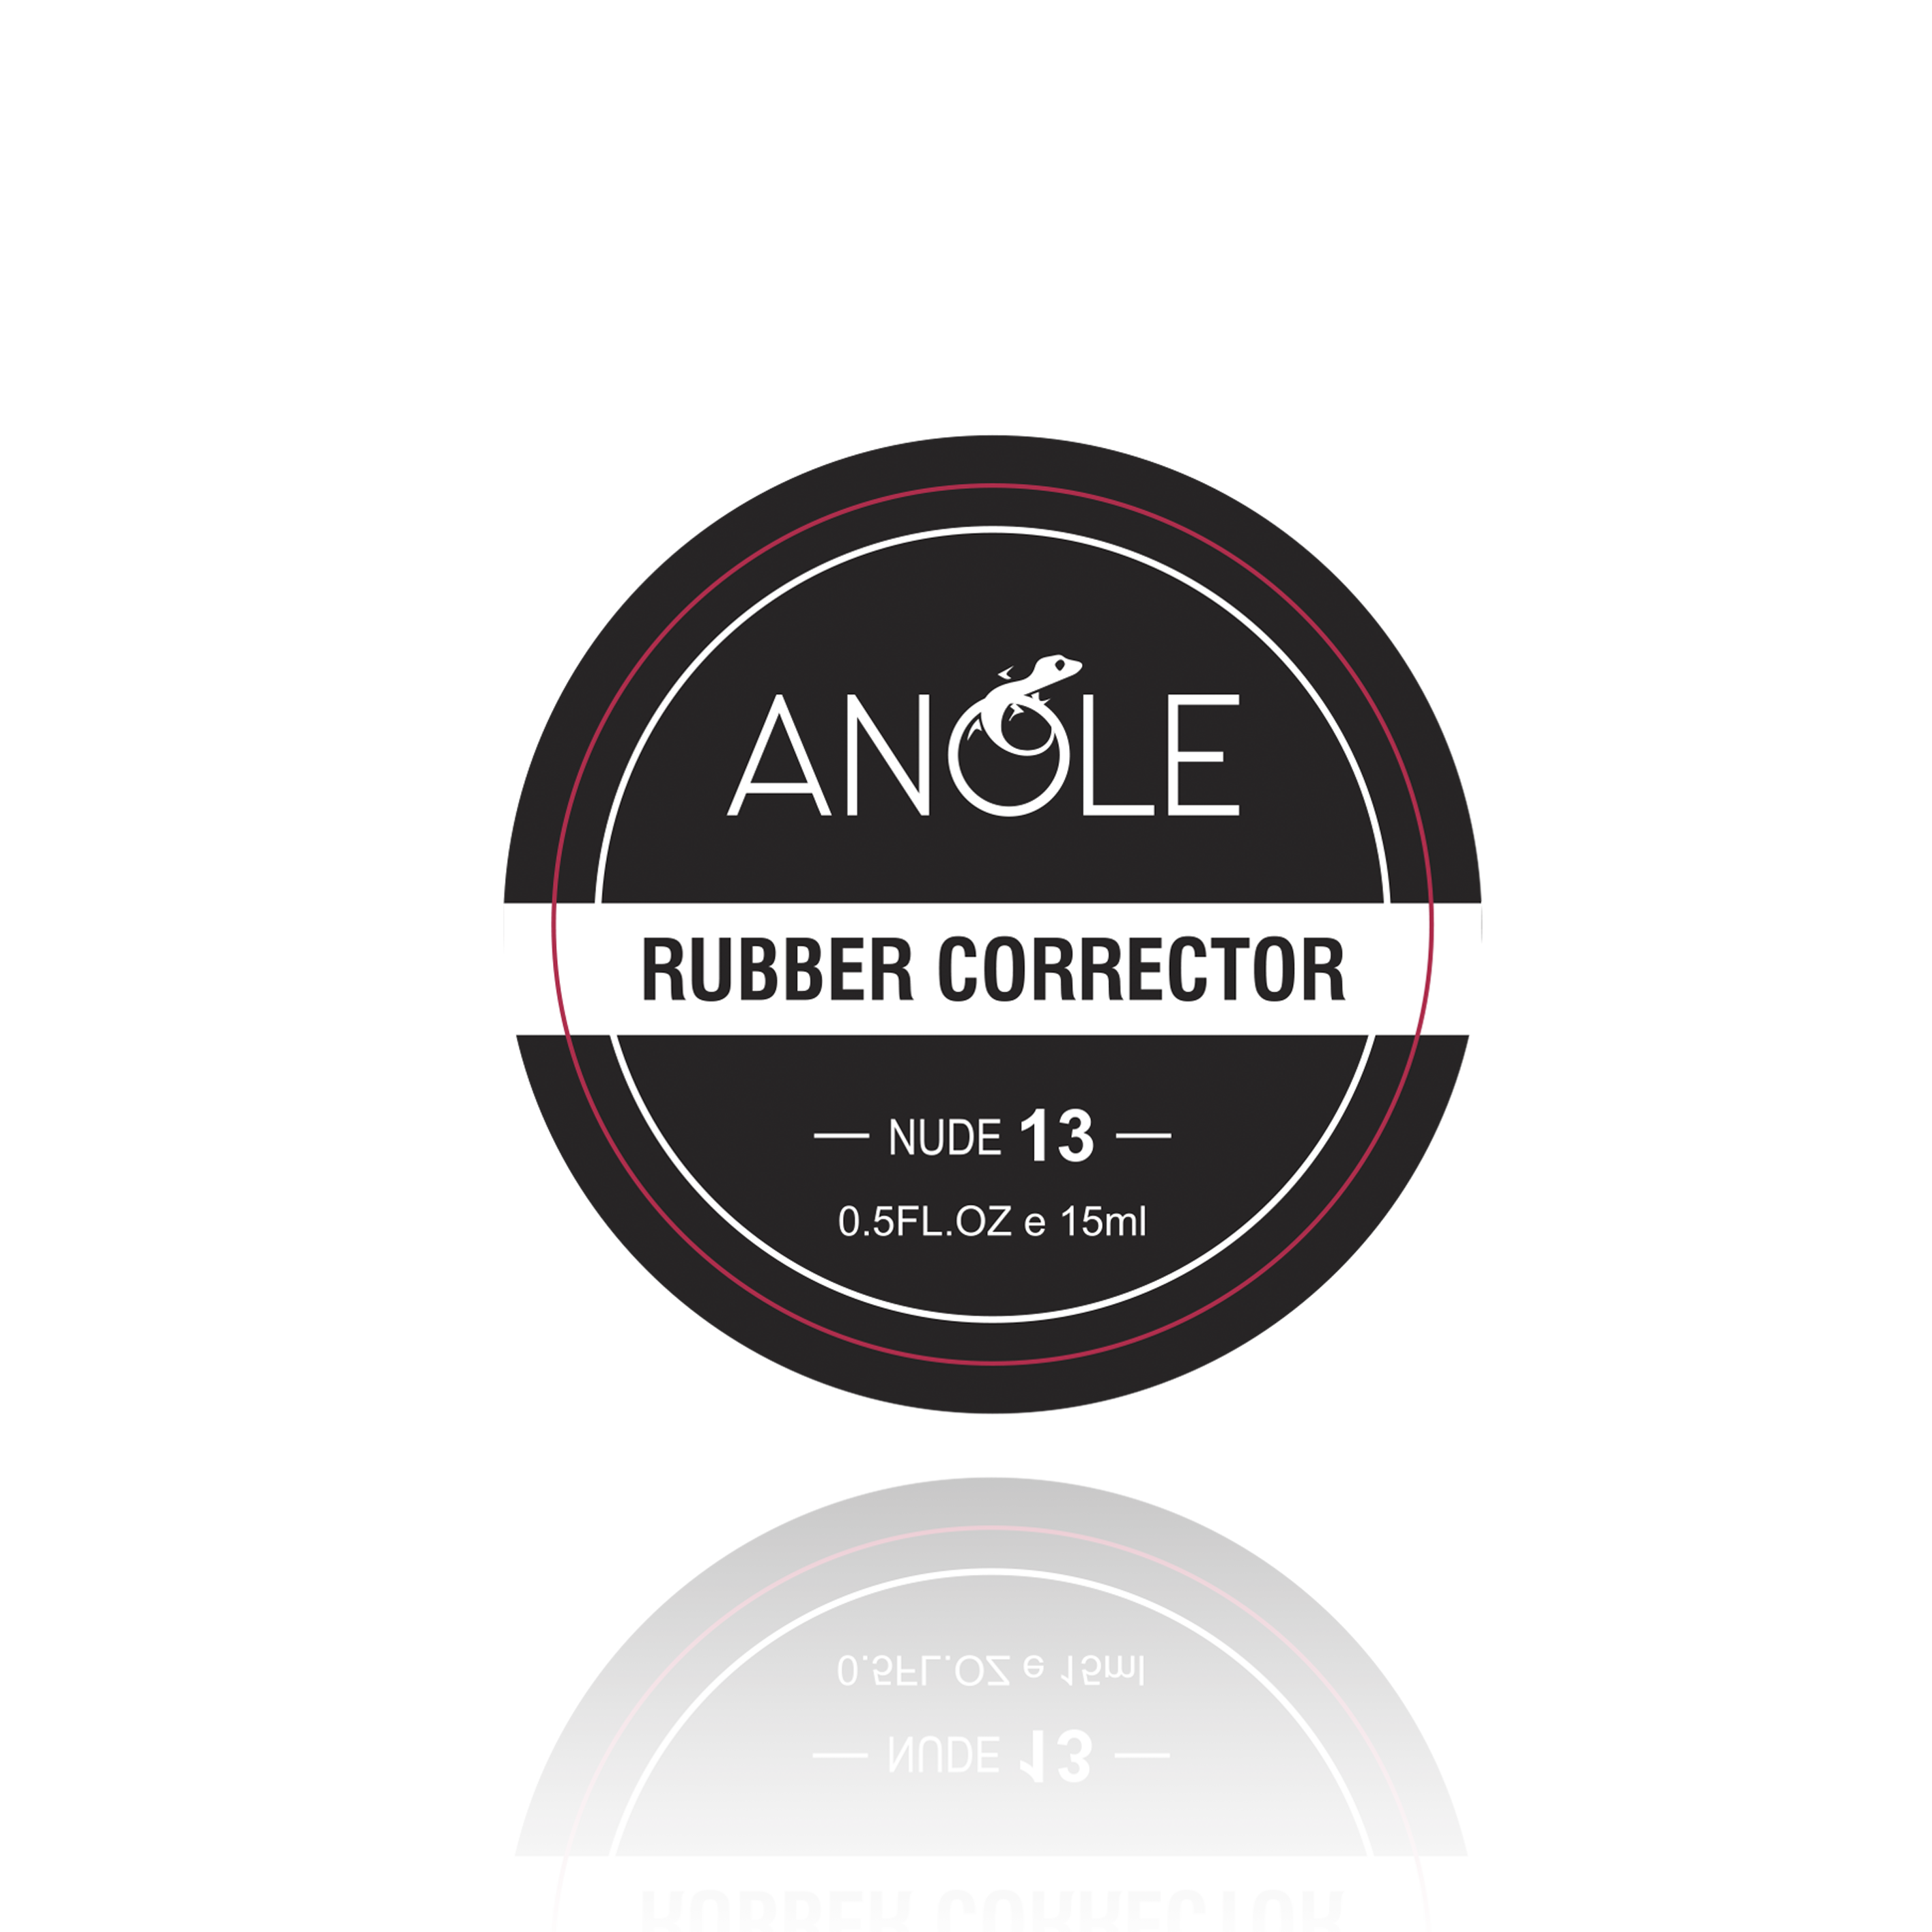 abole rubber corrector nude 13